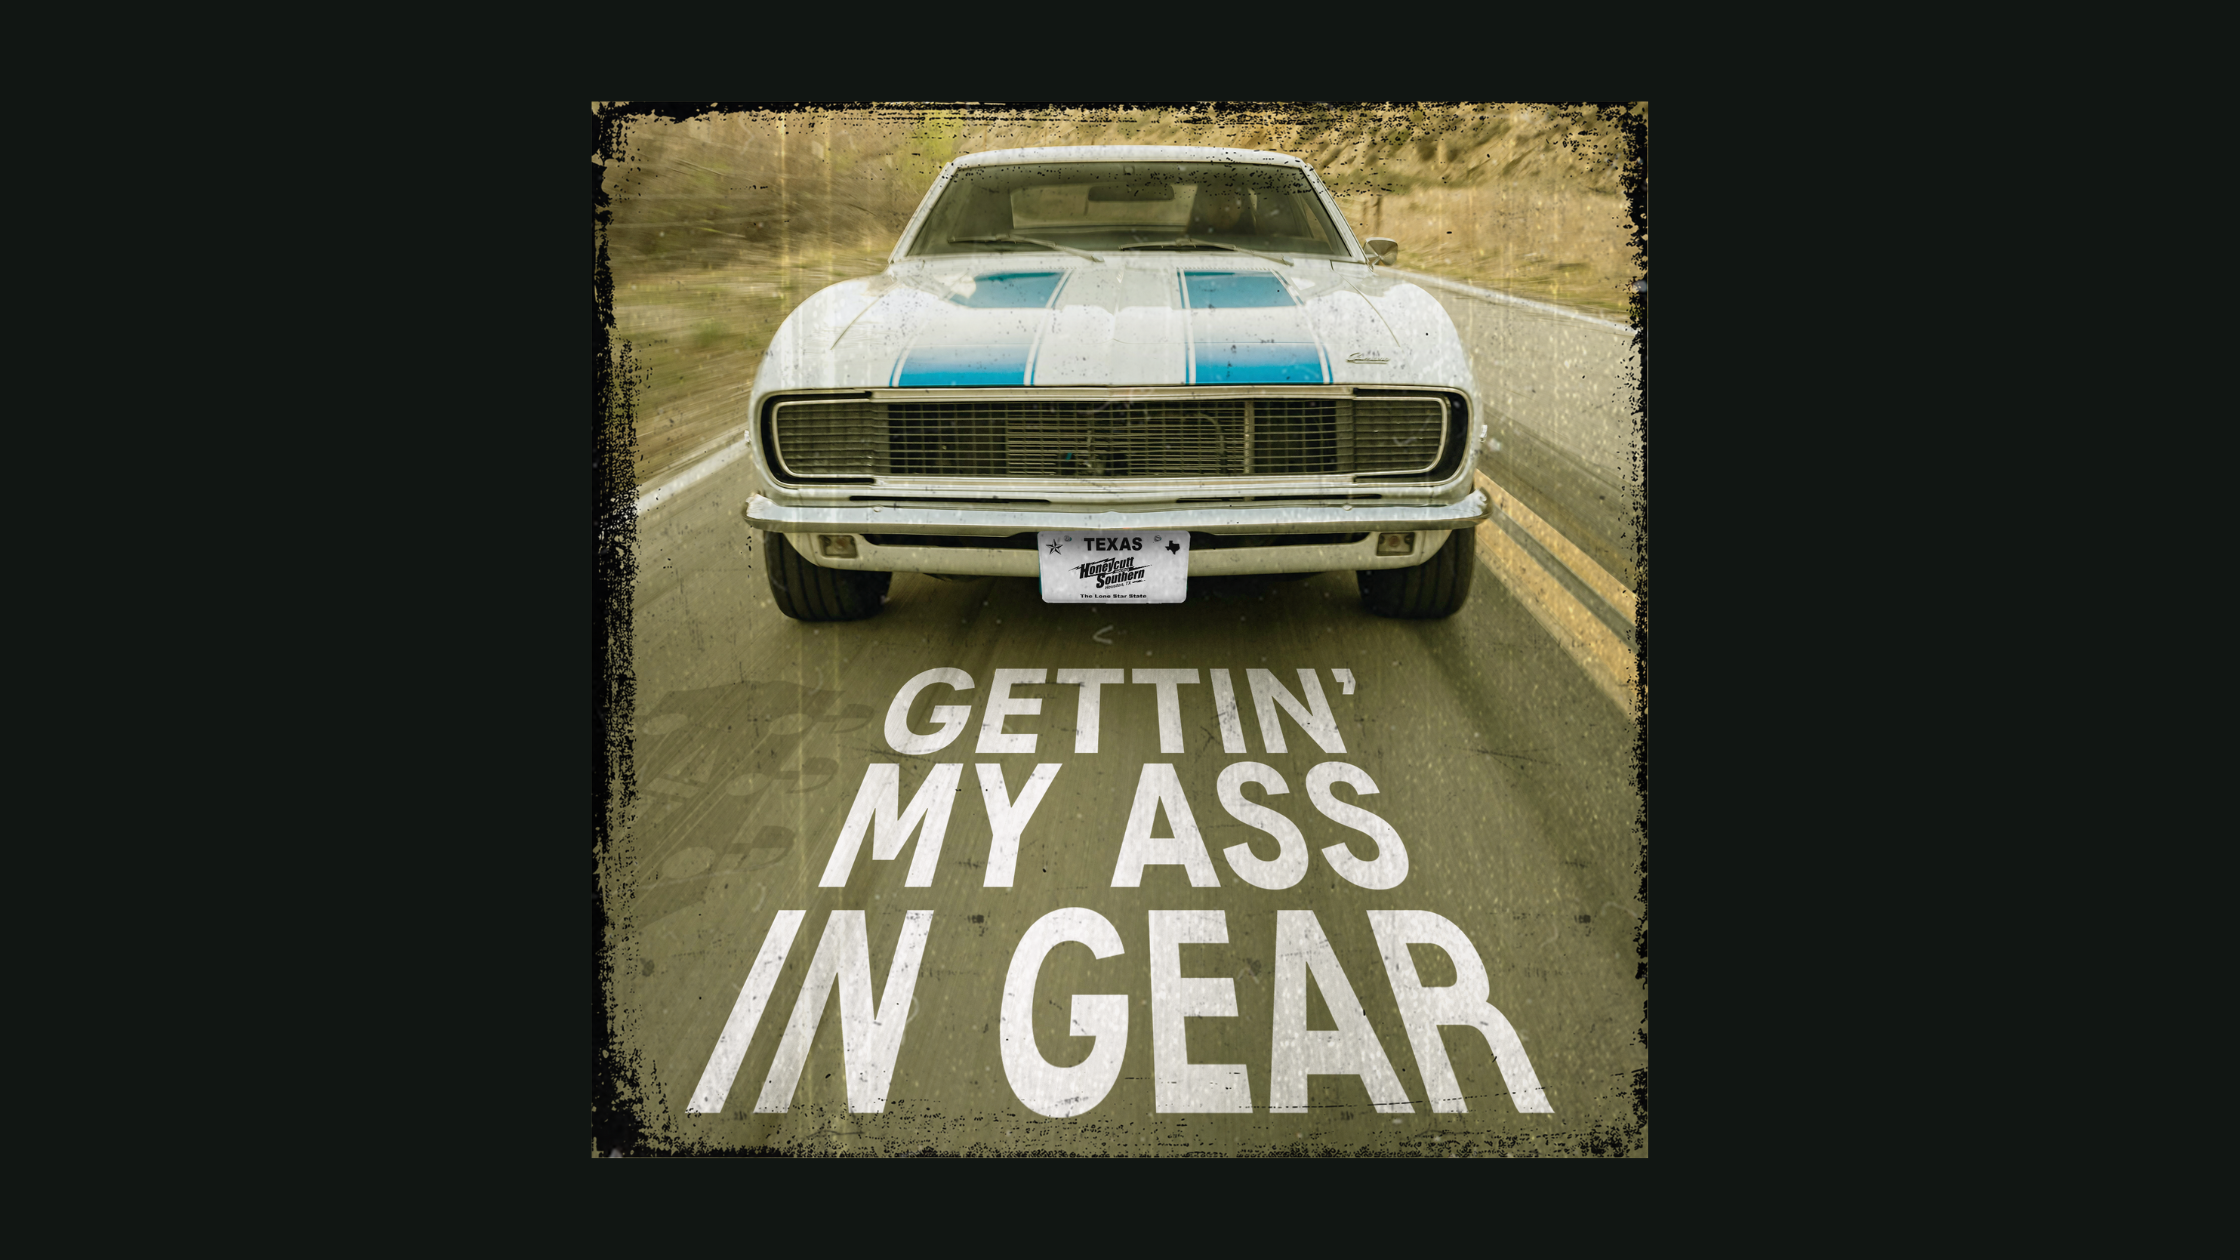 Honeycutt Southern Gettin' My Ass in Gear album artwork